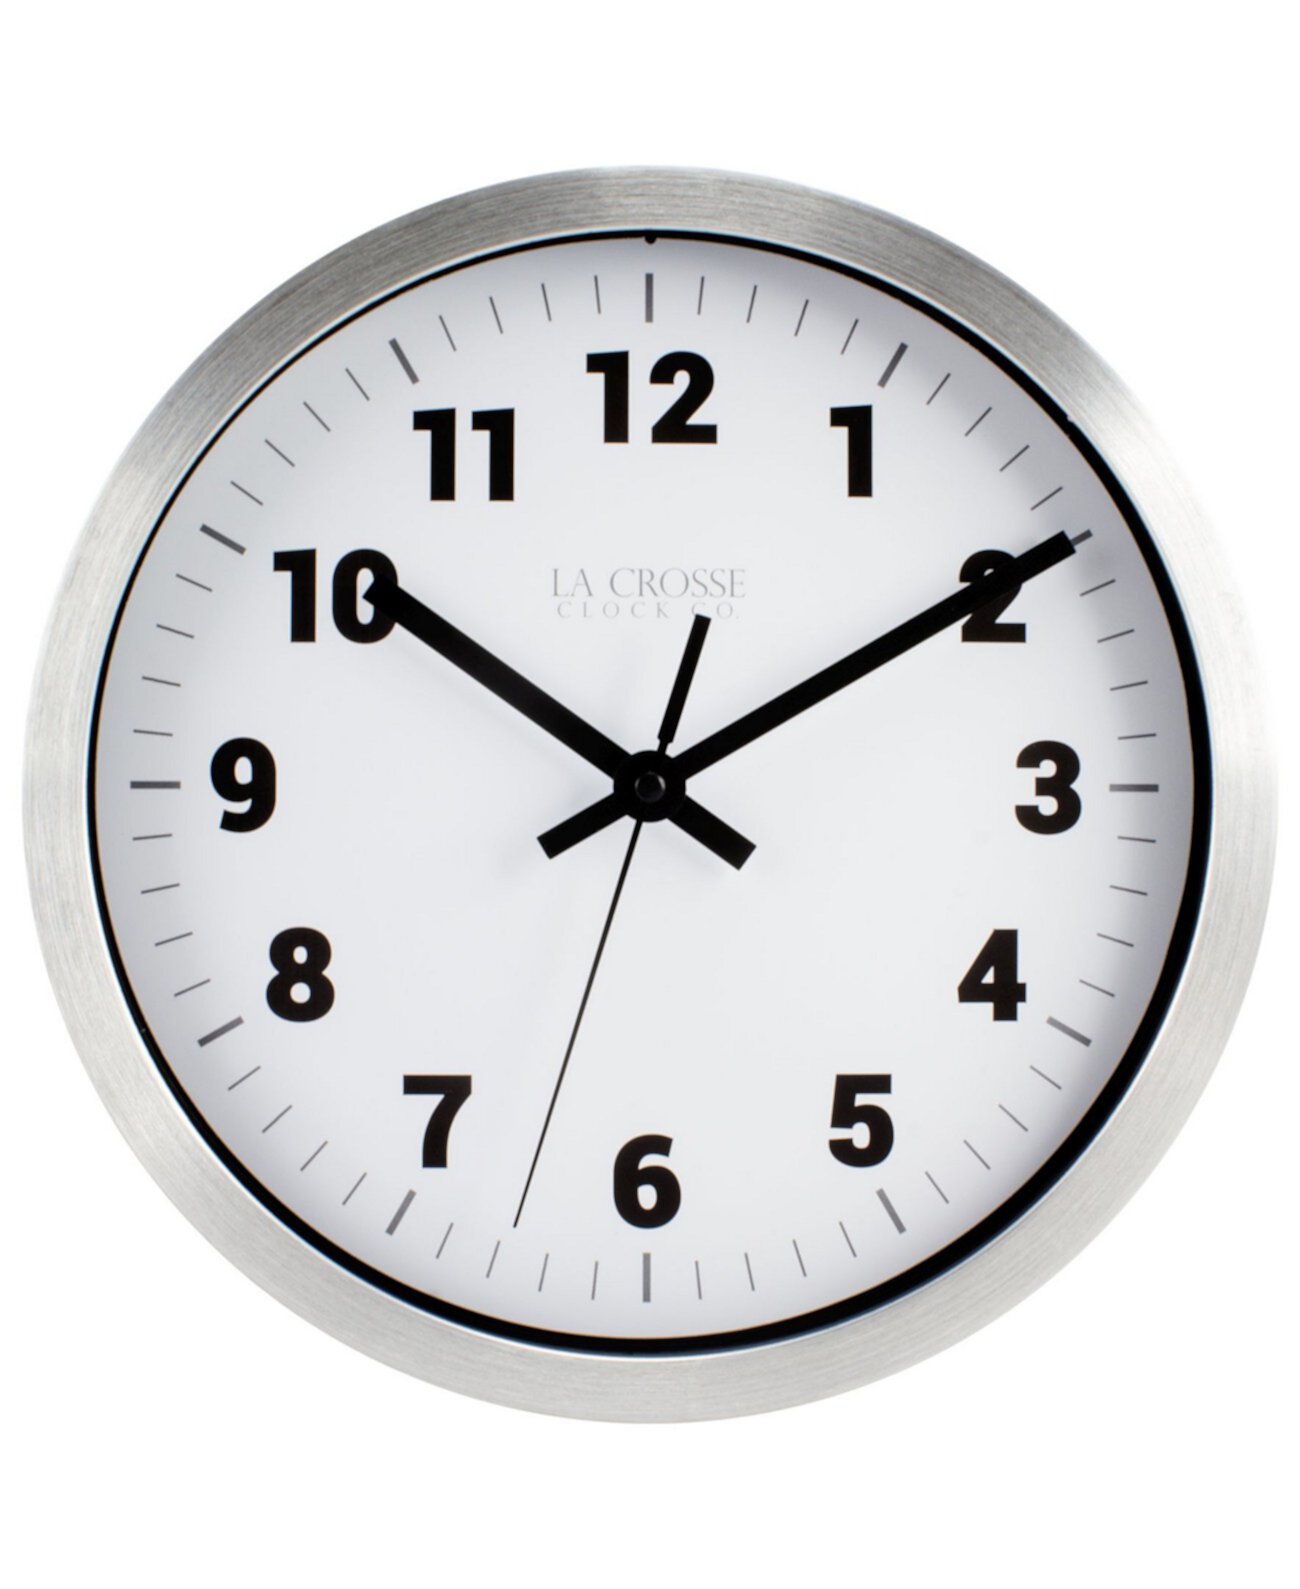 Часы La Crosse 404-2626 10-дюймовые металлические аналоговые настенные часы La Crosse Technology